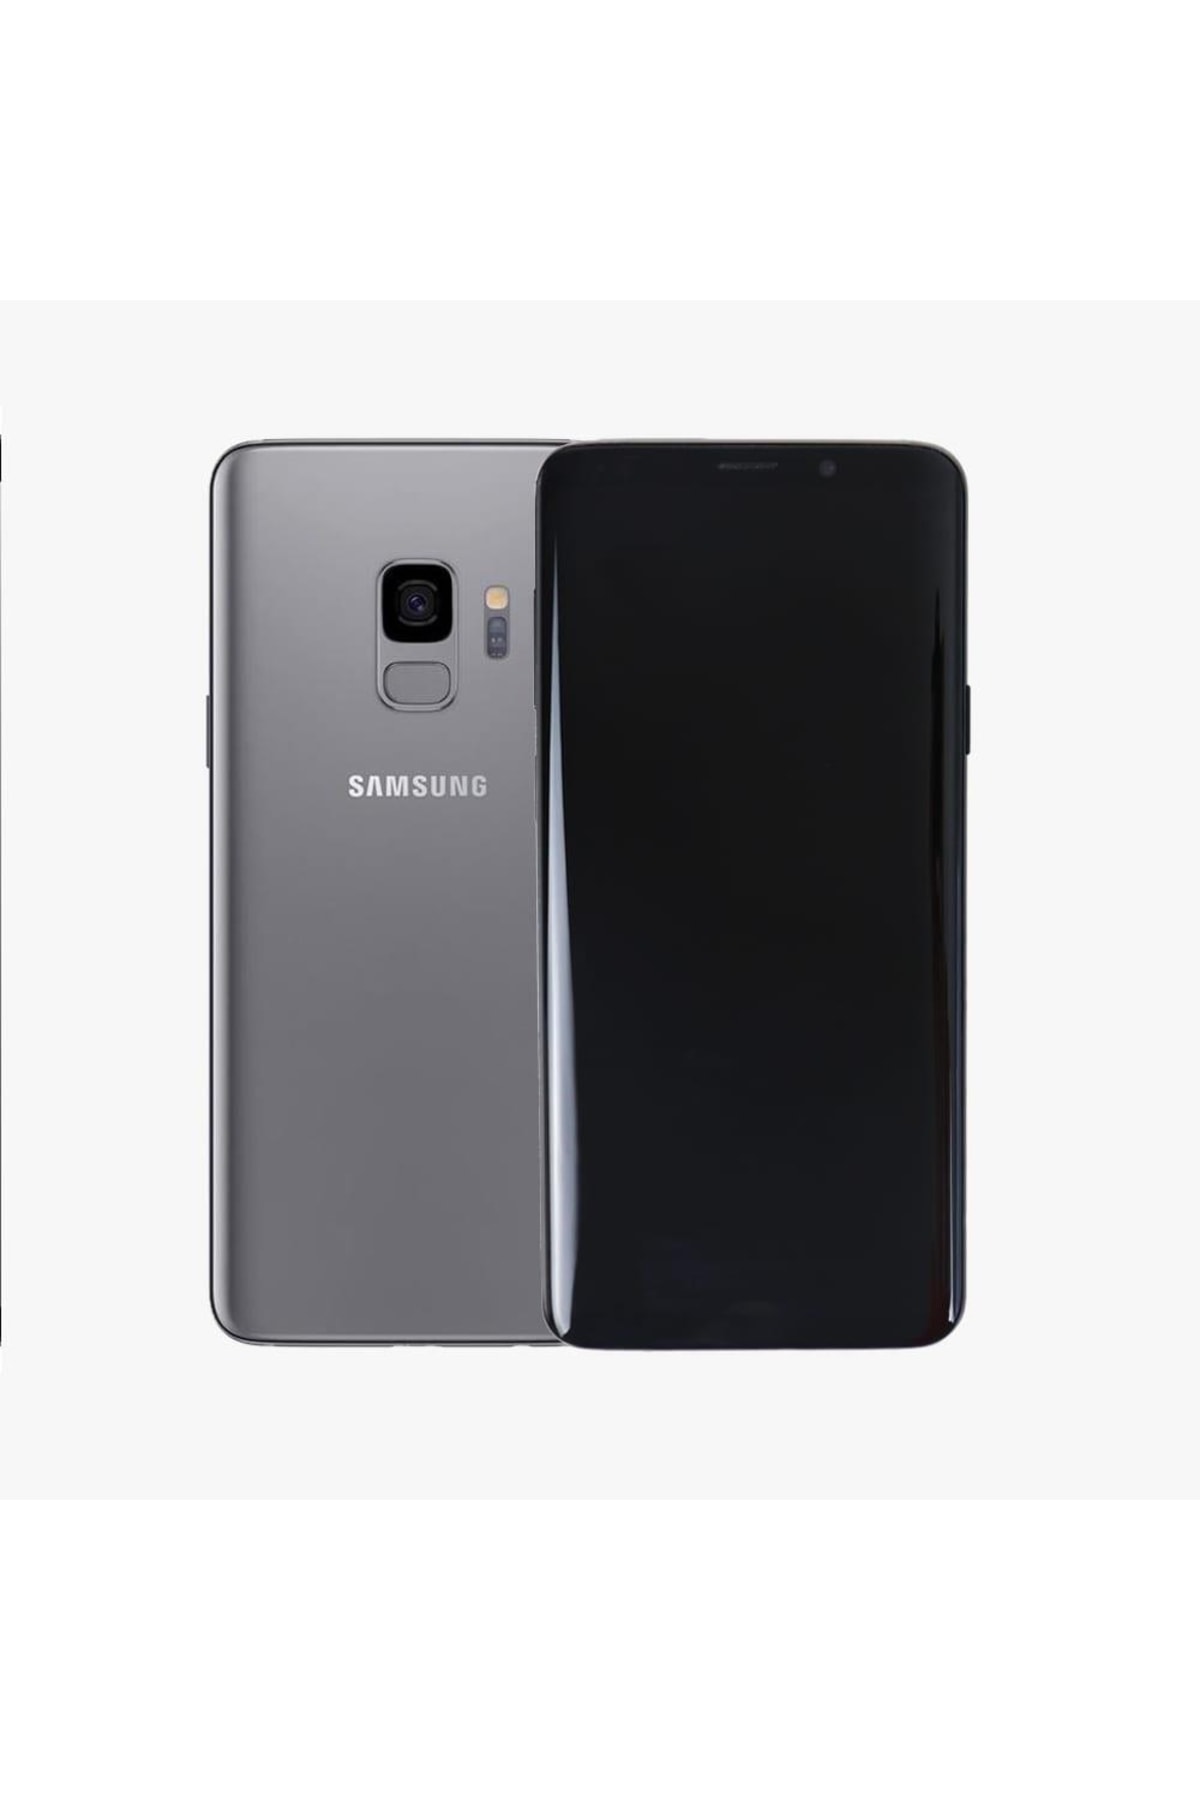 Samsung Yenilenmiş Galaxy S9 Plus Gray 64gb B Kalite (12 Ay Garantili)